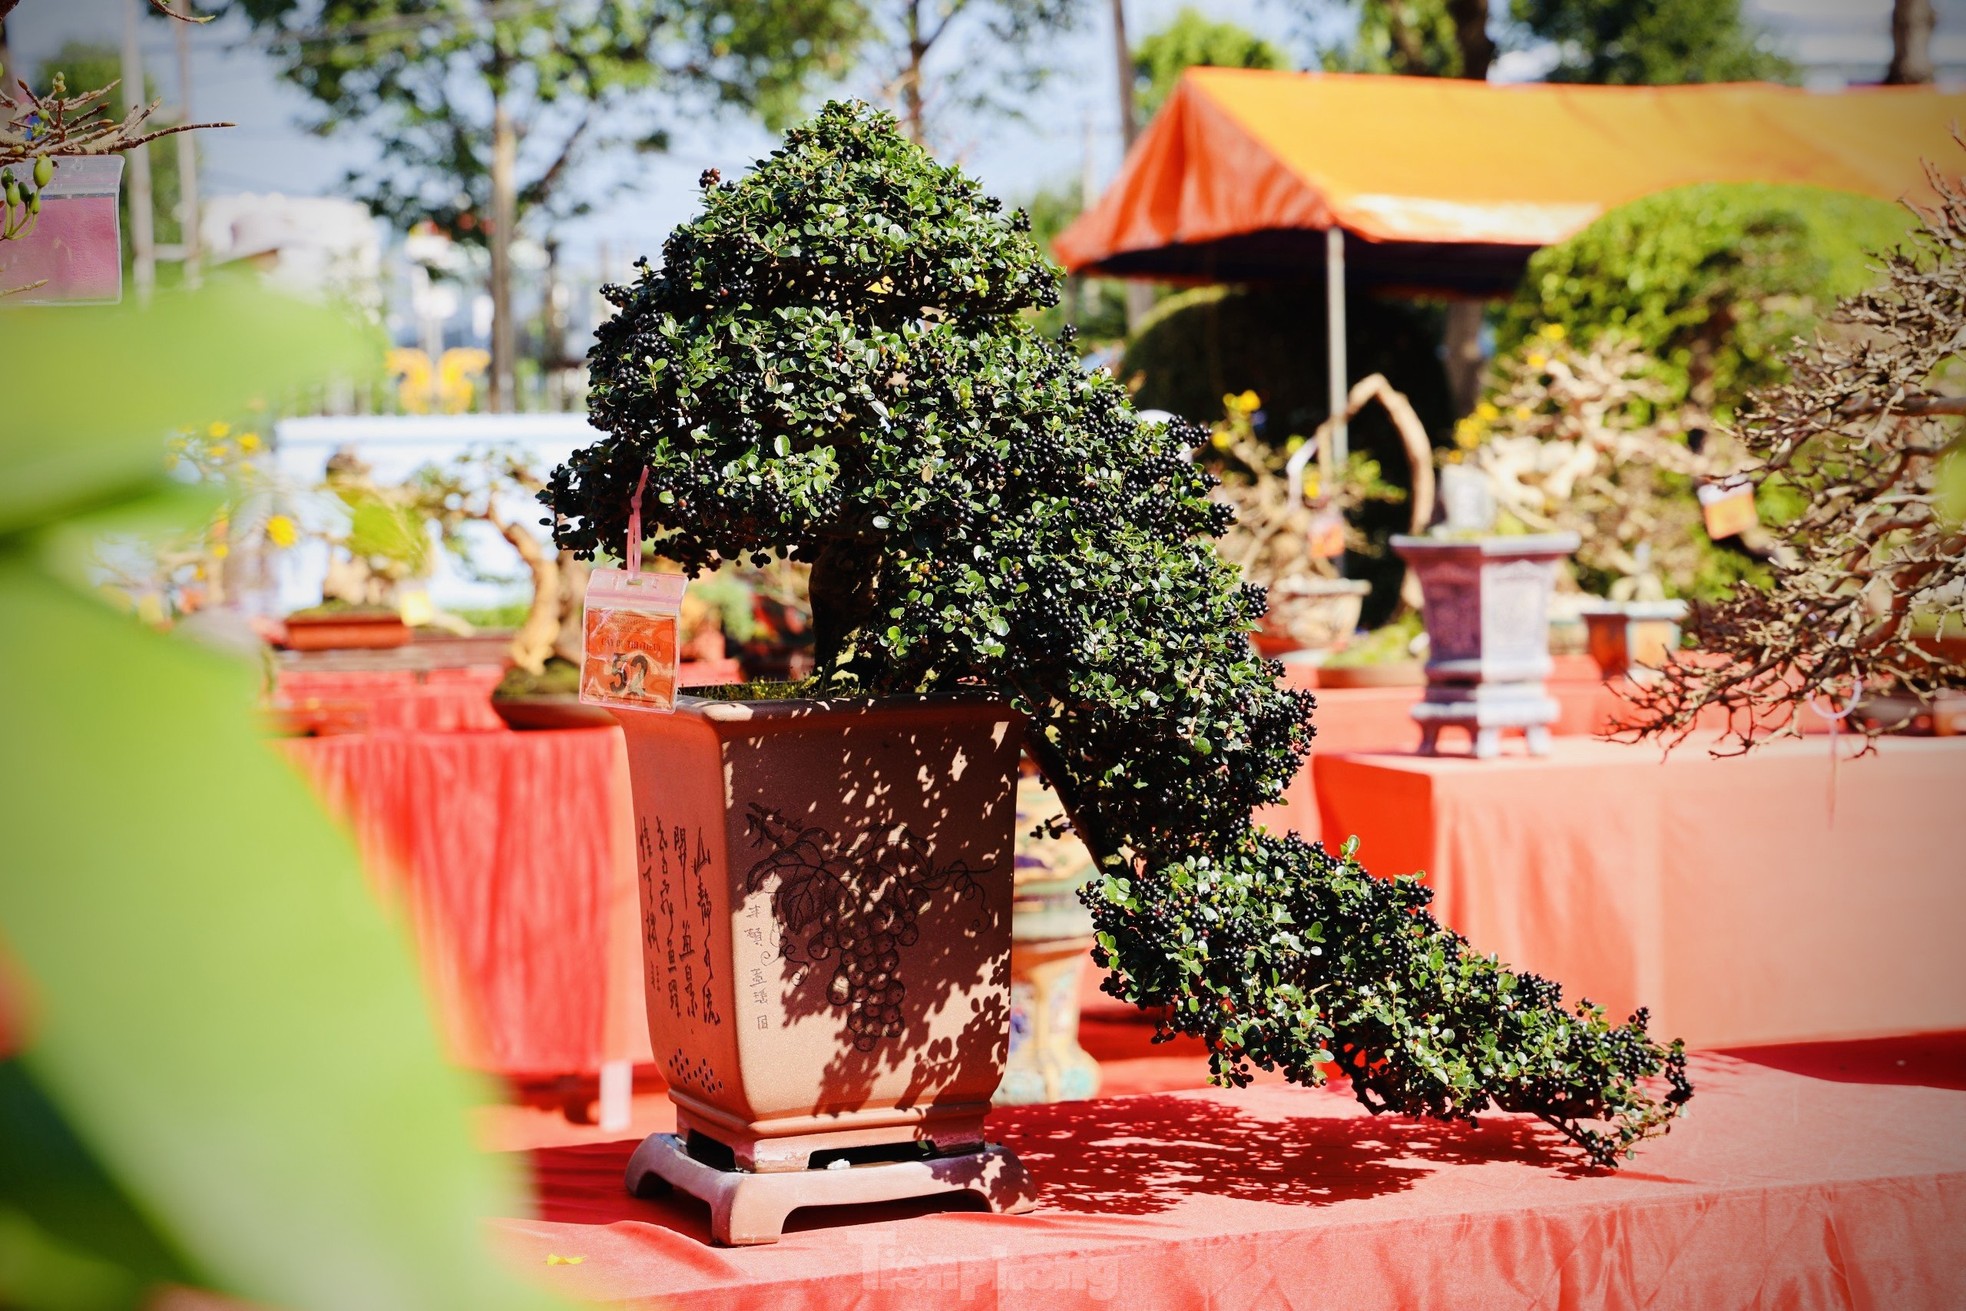 Dàn bonsai độc lạ, giá lên đến 500 triệu đồng ở Quảng Ngãi - Ảnh 19.